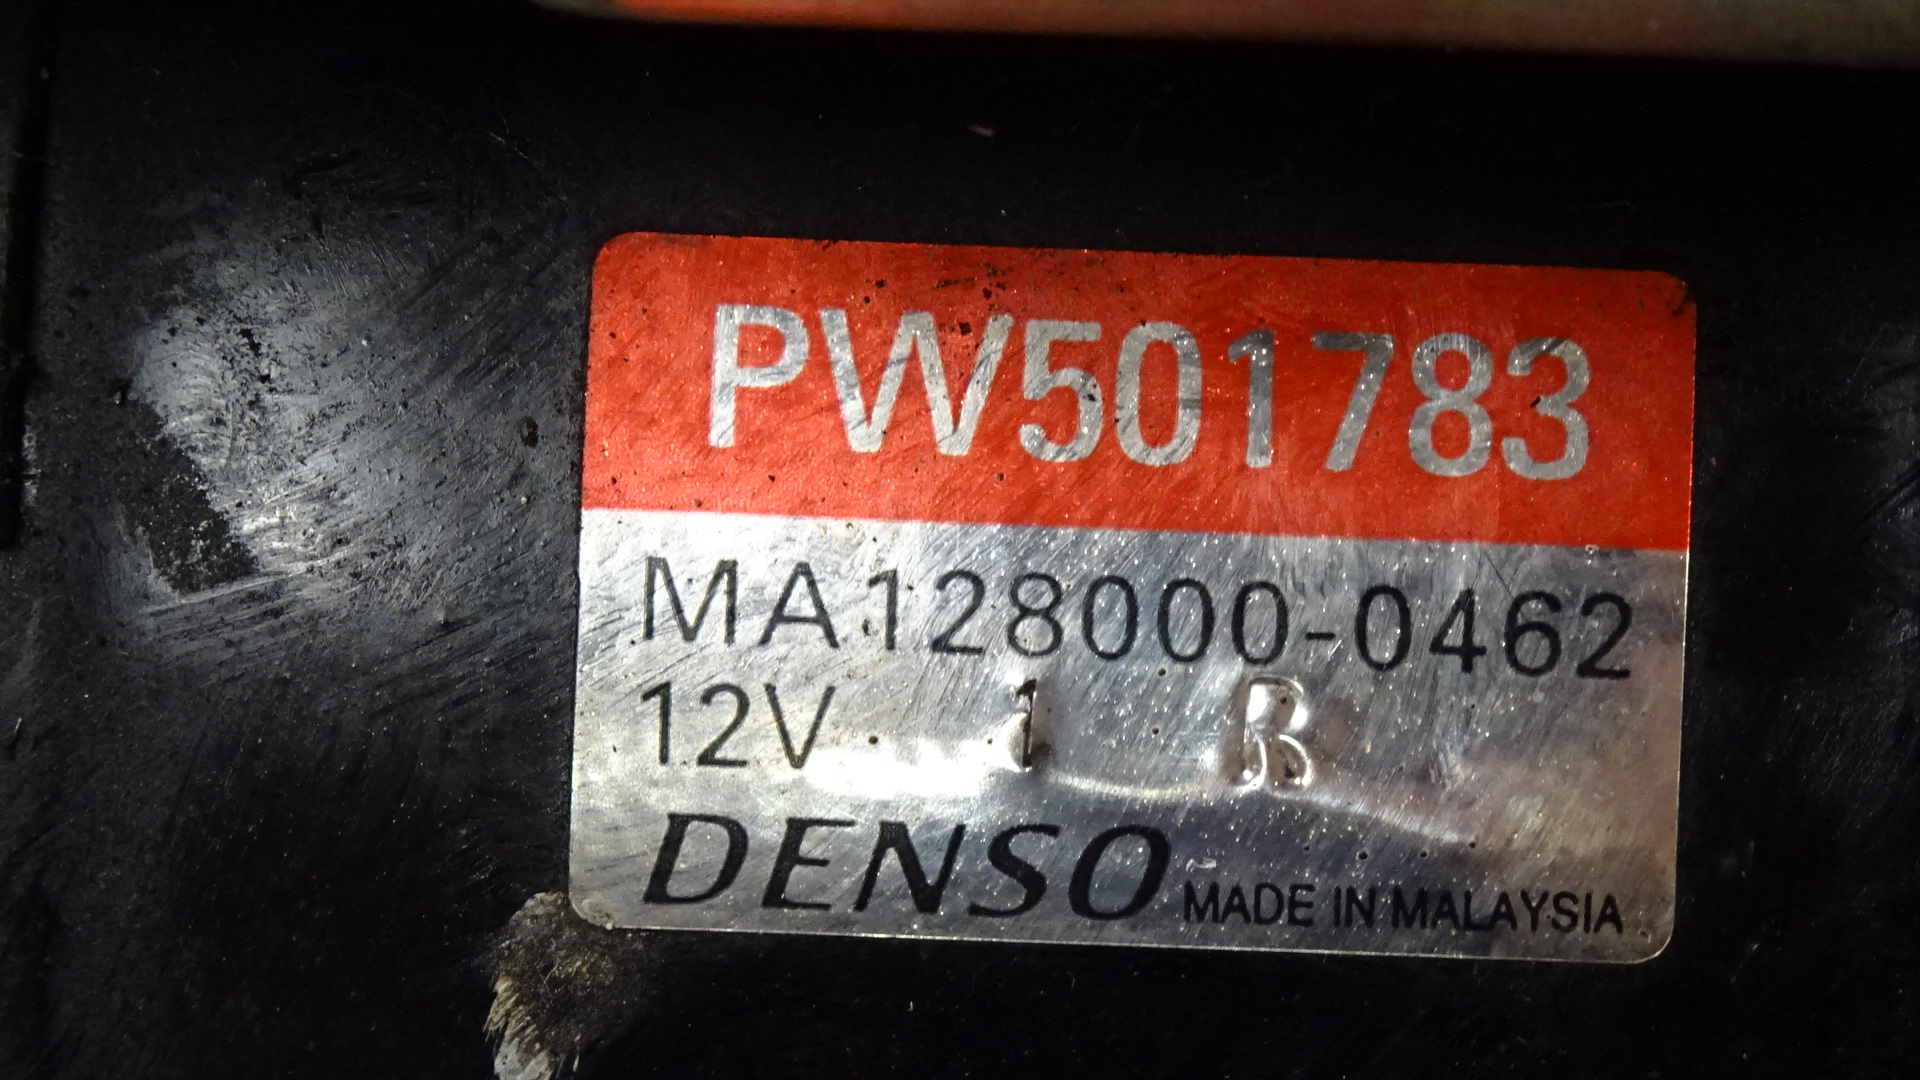 Proton Persona C9 415 GLI BJ 1998 Anlasser 1.2 55kw 4G13 PW501783 Denso MA1280000462